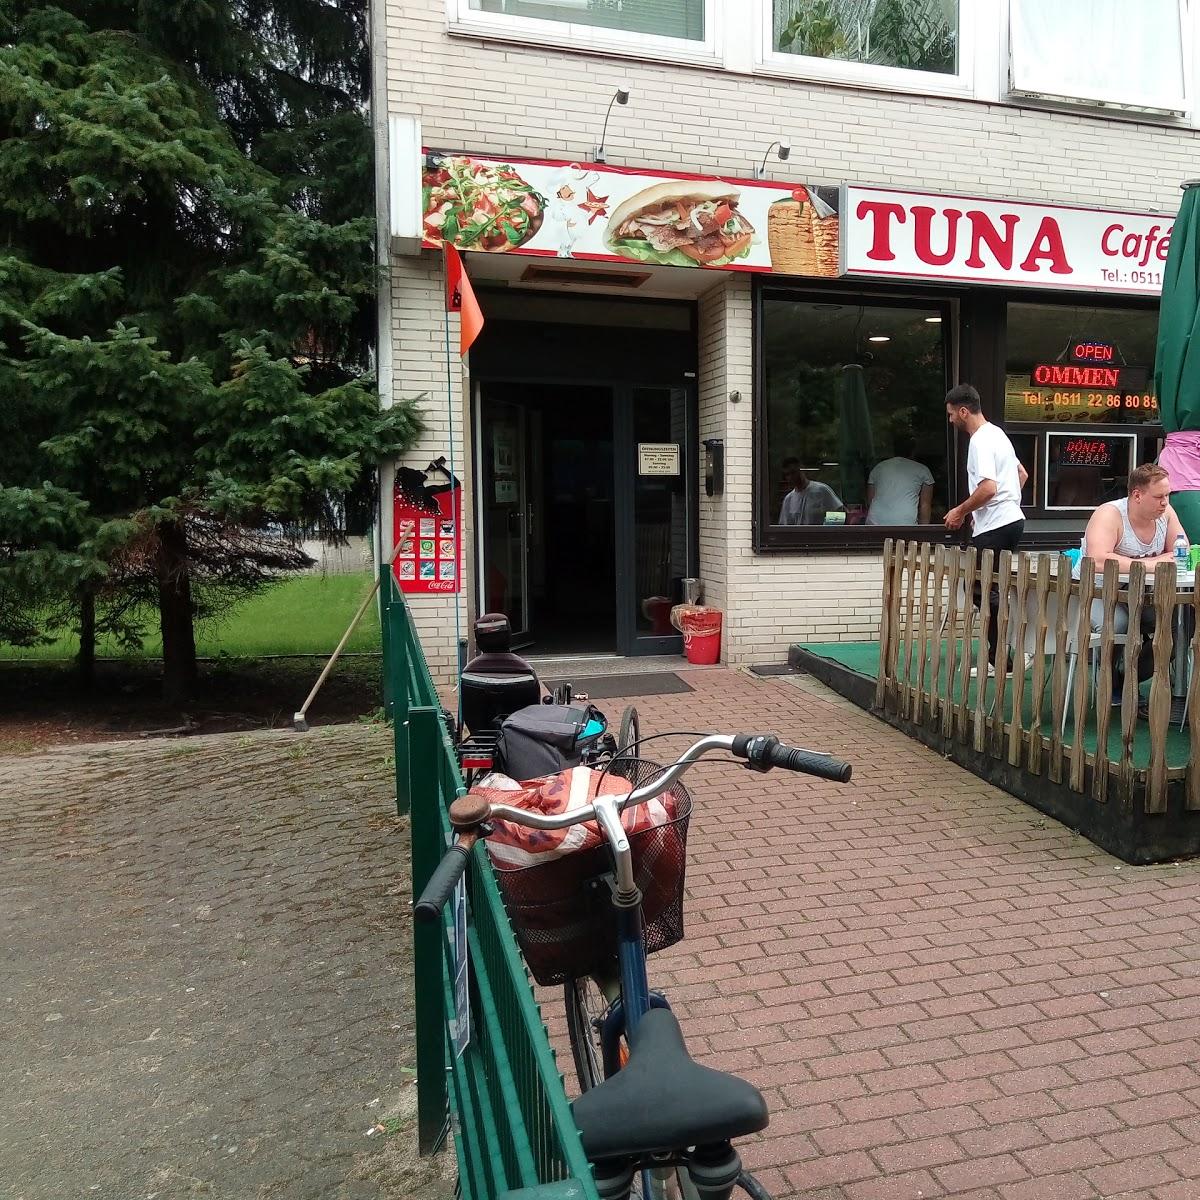 Restaurant "TUNA Cafe + Bistro UG (haftungsbeschränkt)" in Hannover